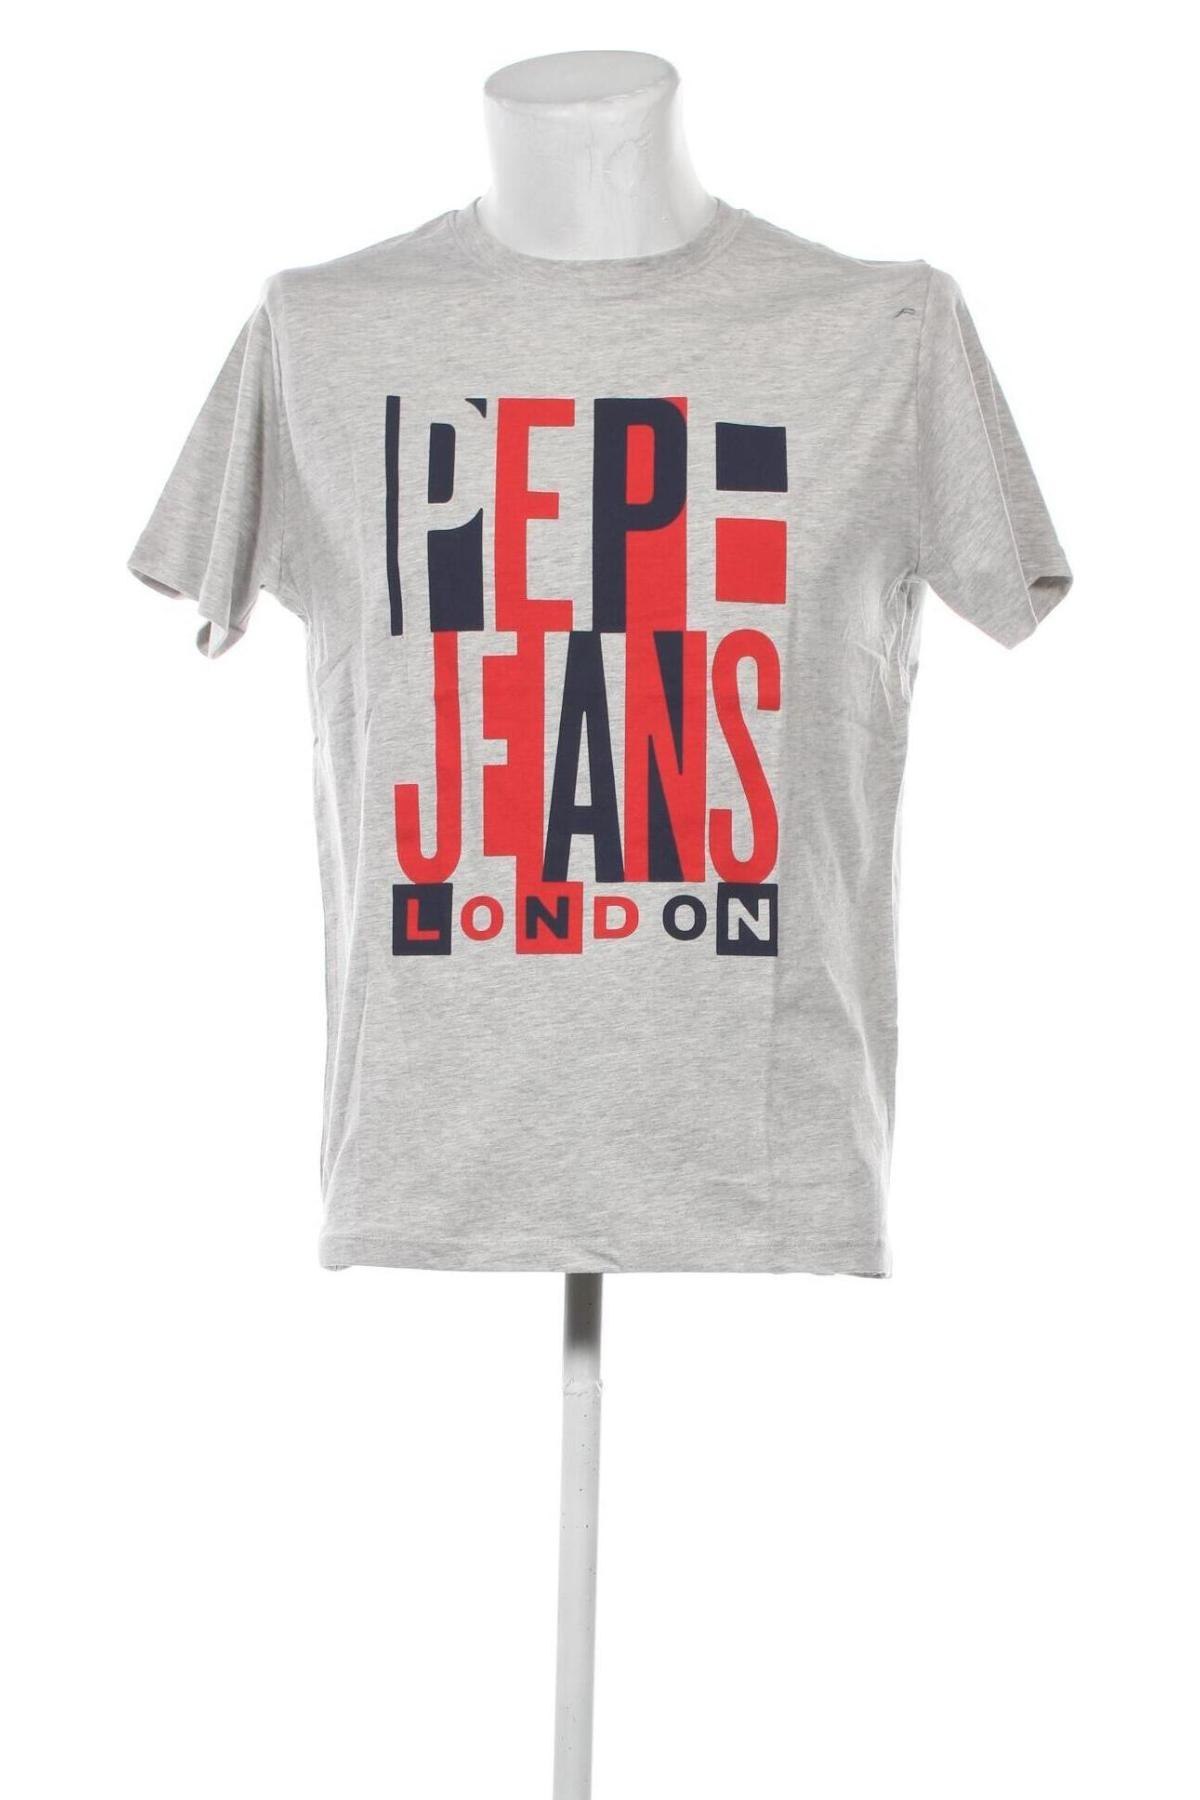 - bei günstig Remix Jeans #123455064 Pepe Herren T-Shirt -